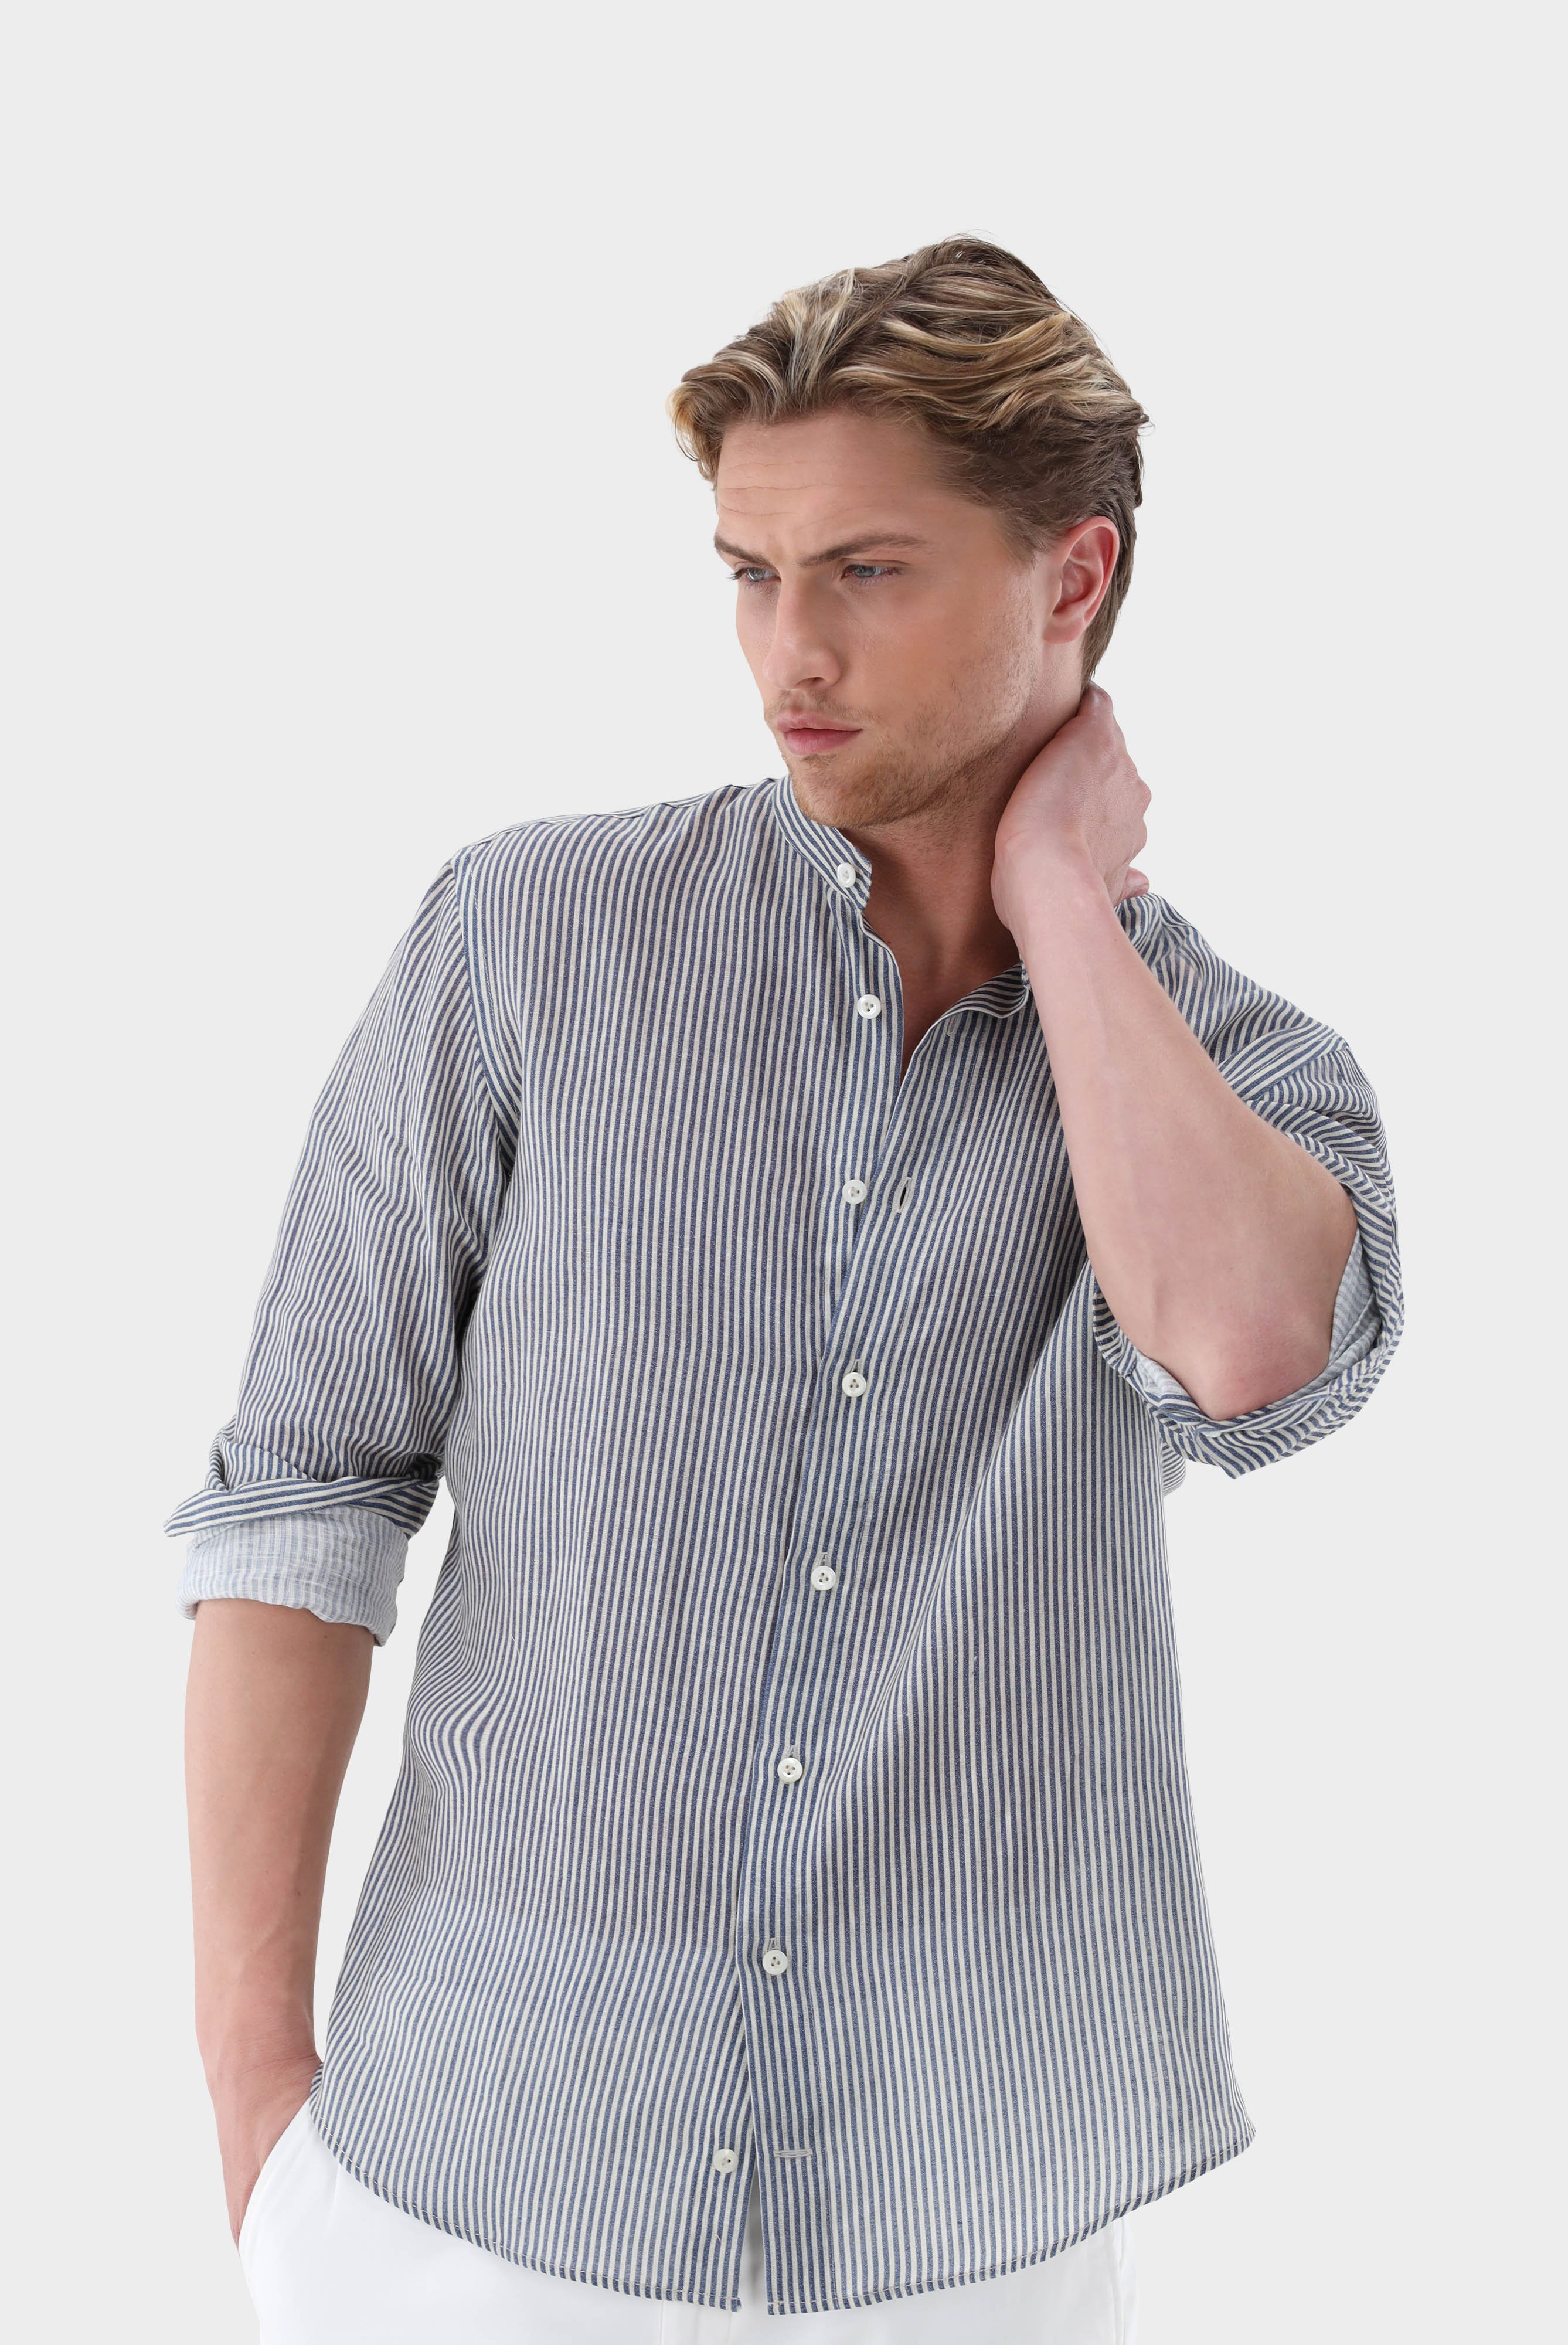 Casual Hemden+Leinenhemd mit Streifen-Druck Tailor Fit+20.2041.9V.170355.761.38